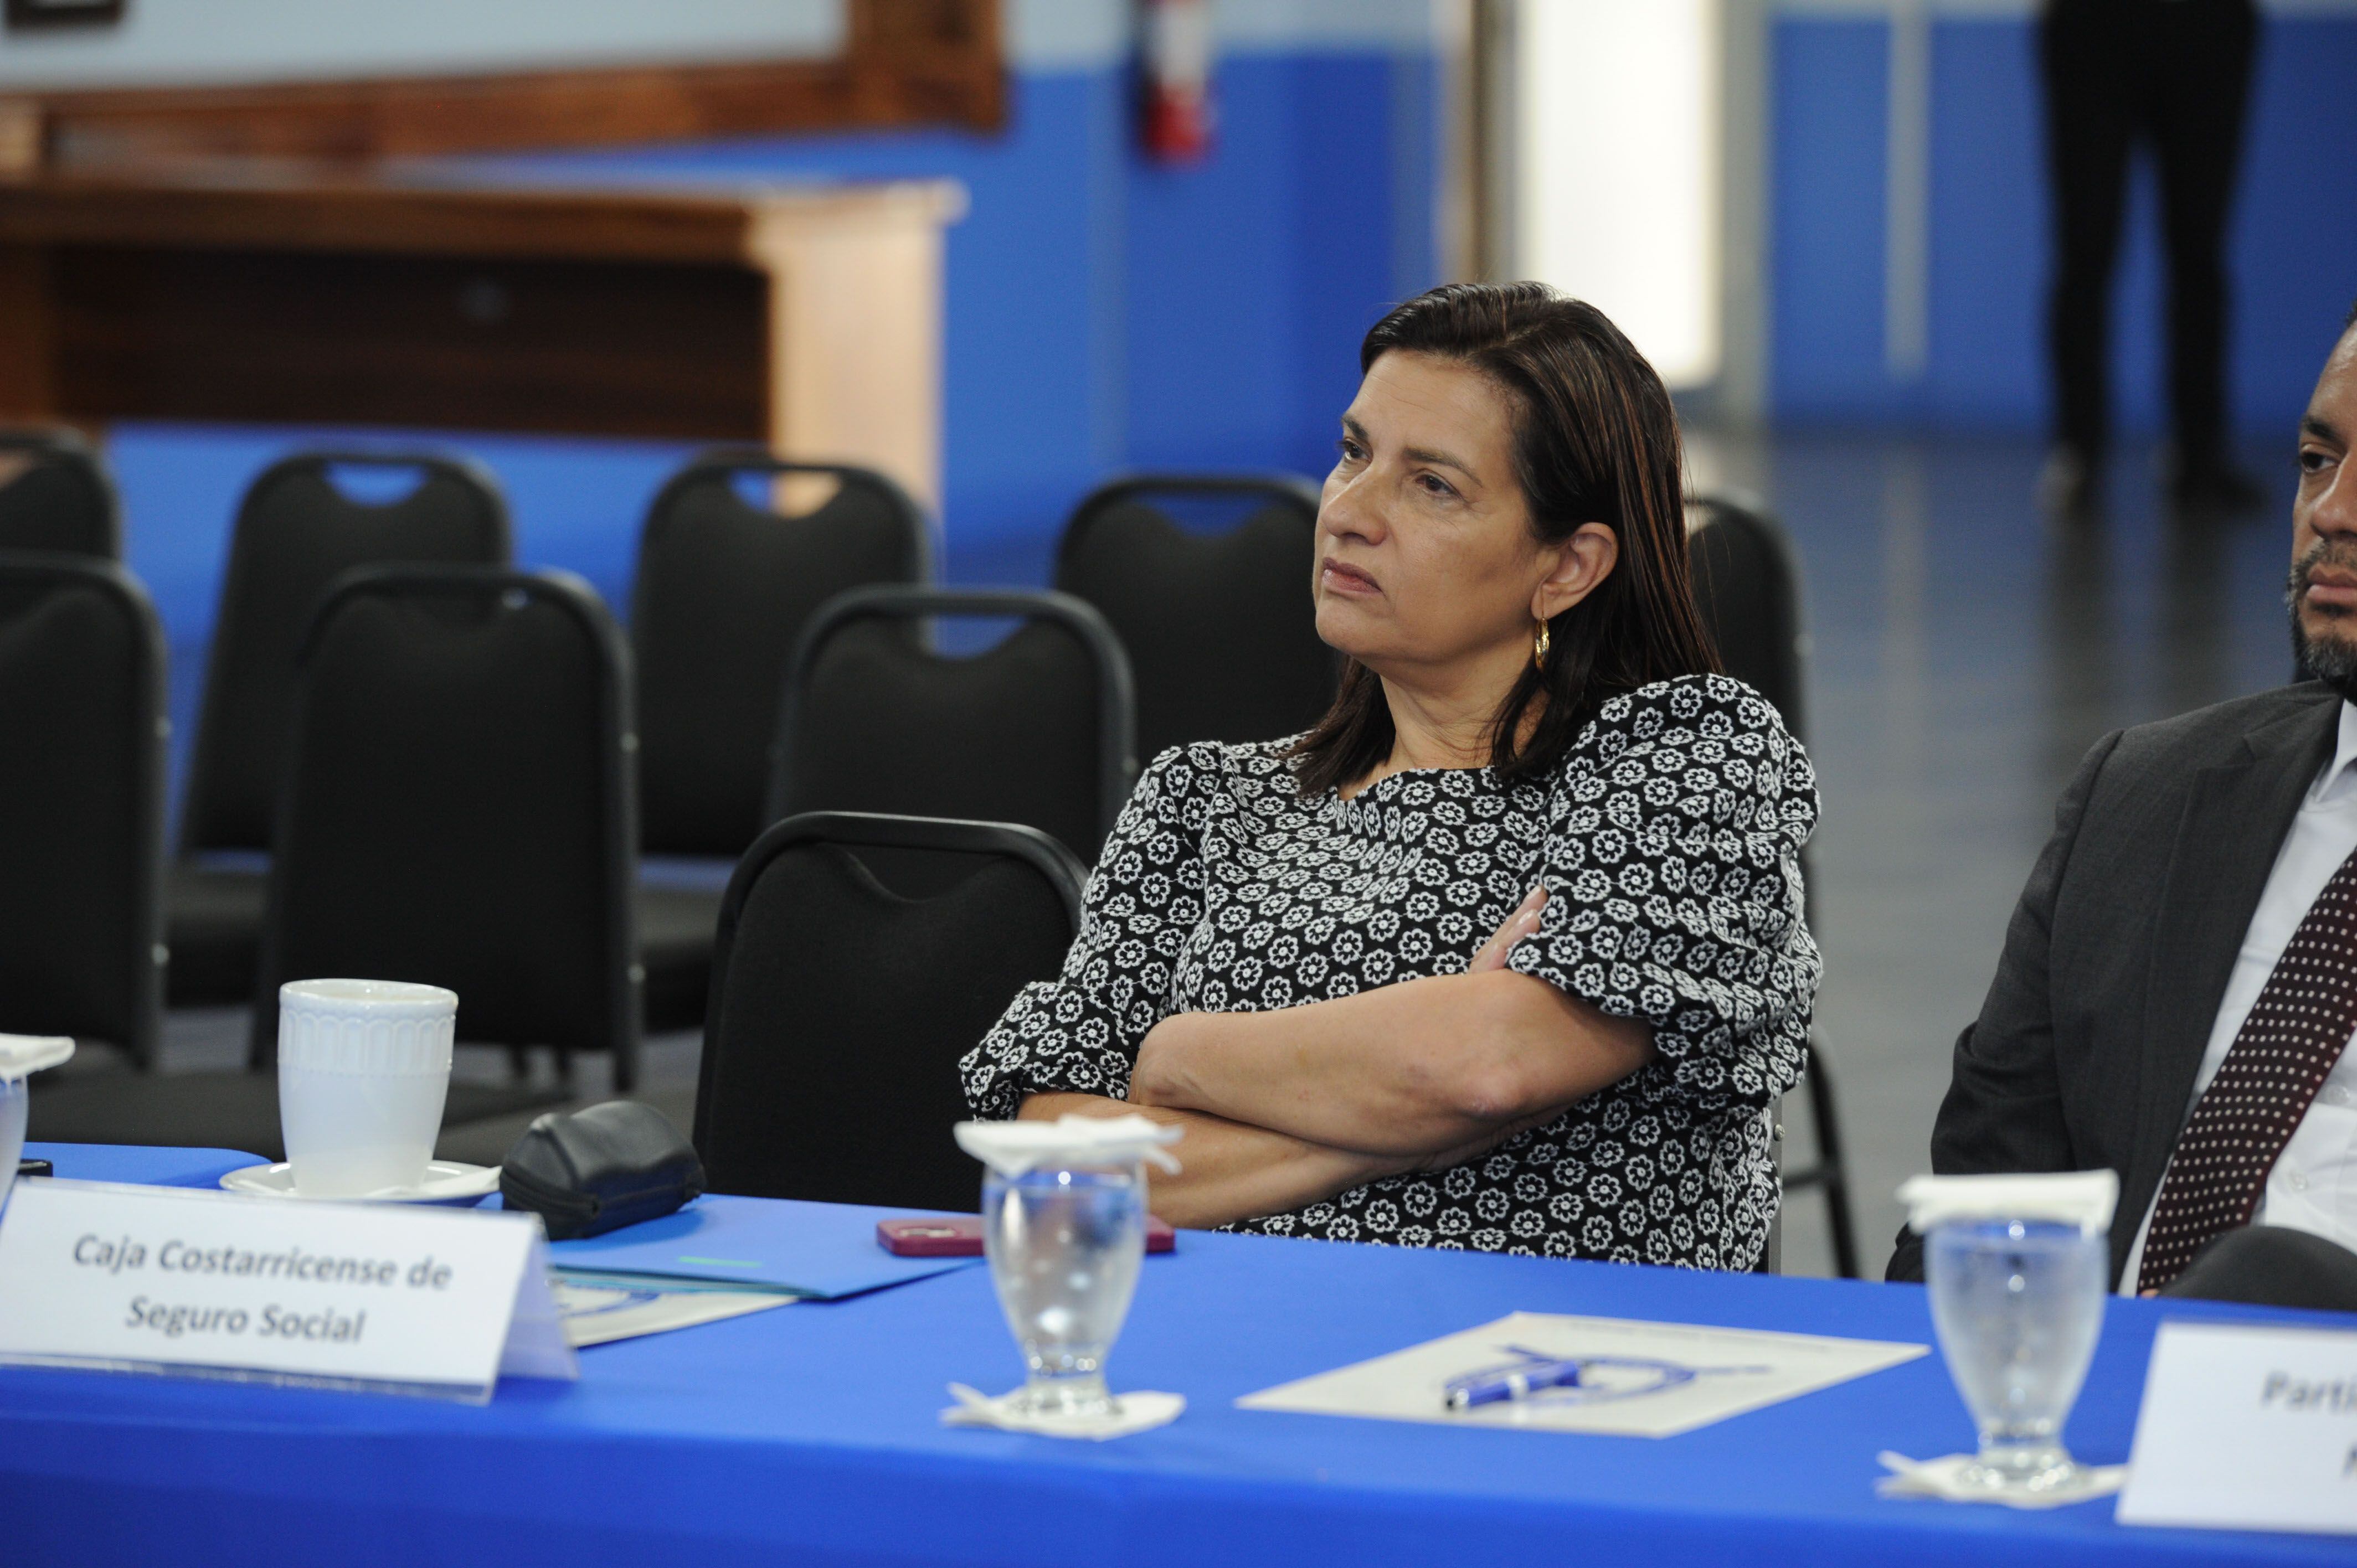 Marta Esquivel, presidenta ejecutiva de la Caja Costarricense de Seguro Social (CCSS) interpuso un recurso de amparo contra el movimiento de los médicos especialistas. La Sala IV lo rechazó.